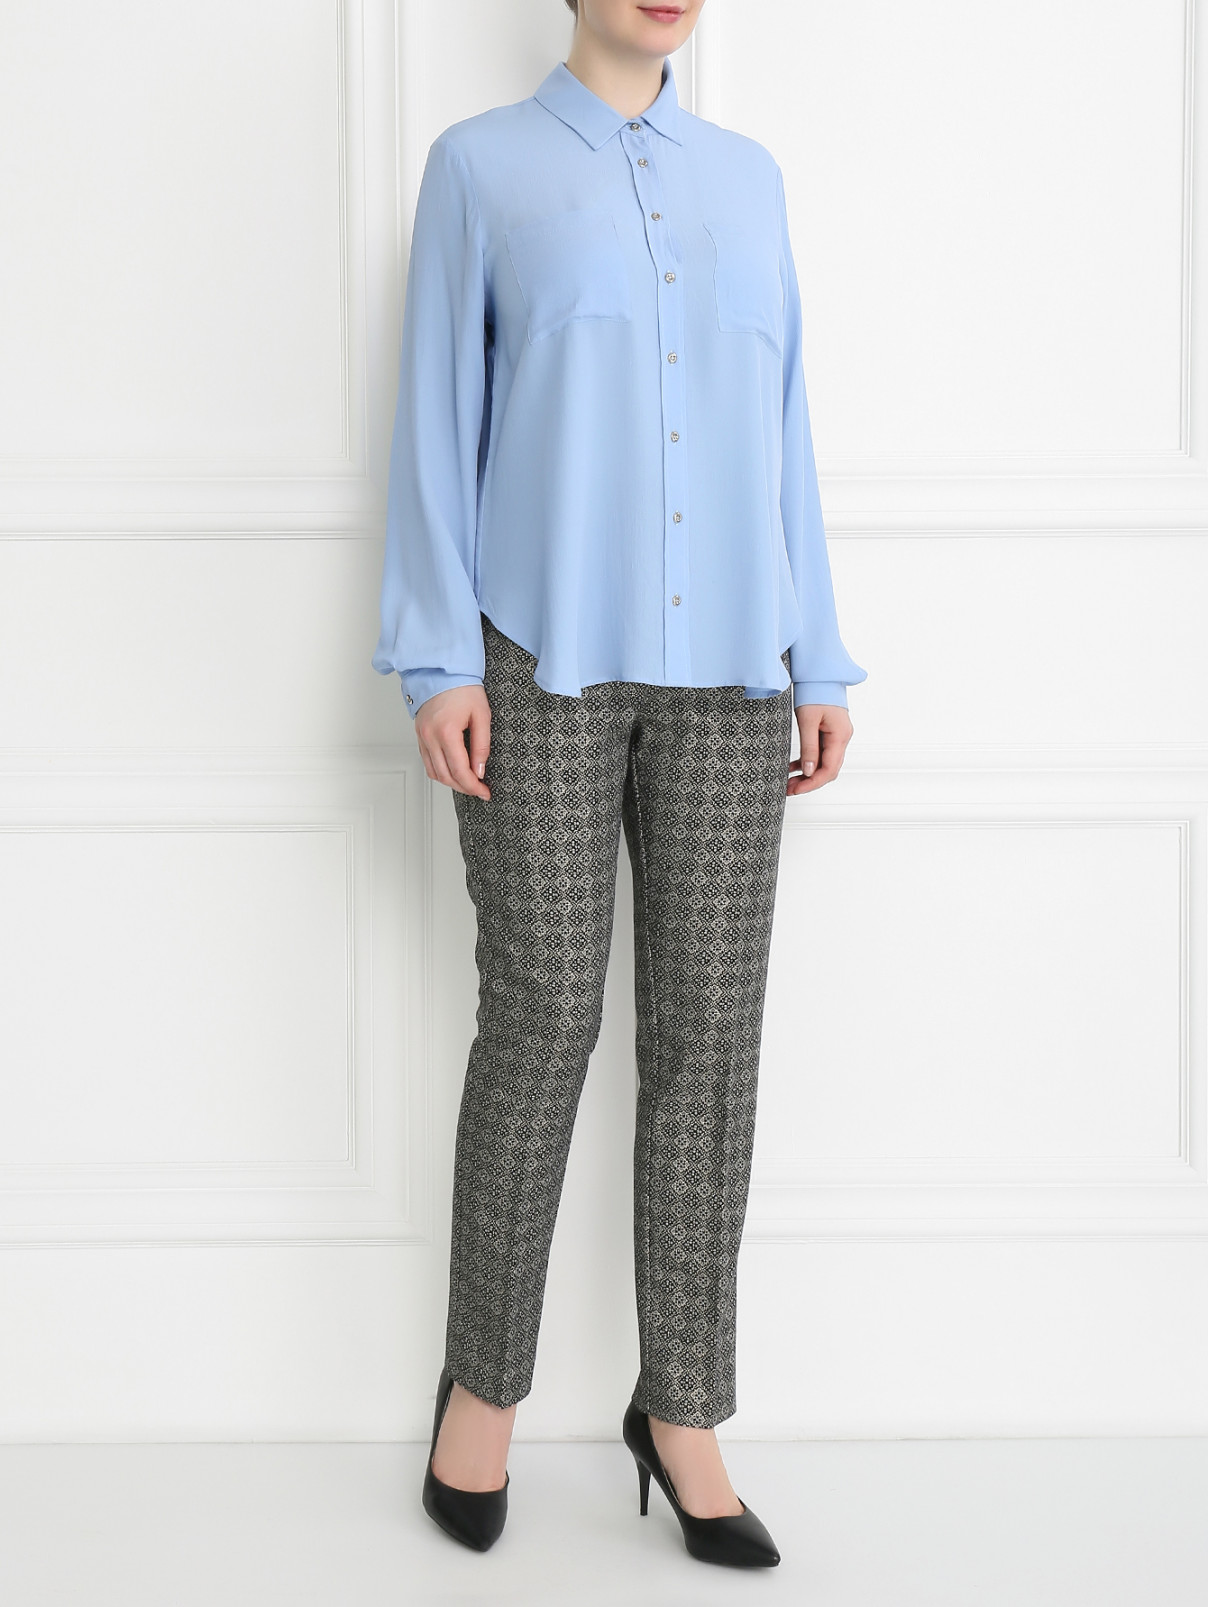 Блуза с накладными карманами Marina Sport  –  Модель Общий вид  – Цвет:  Синий